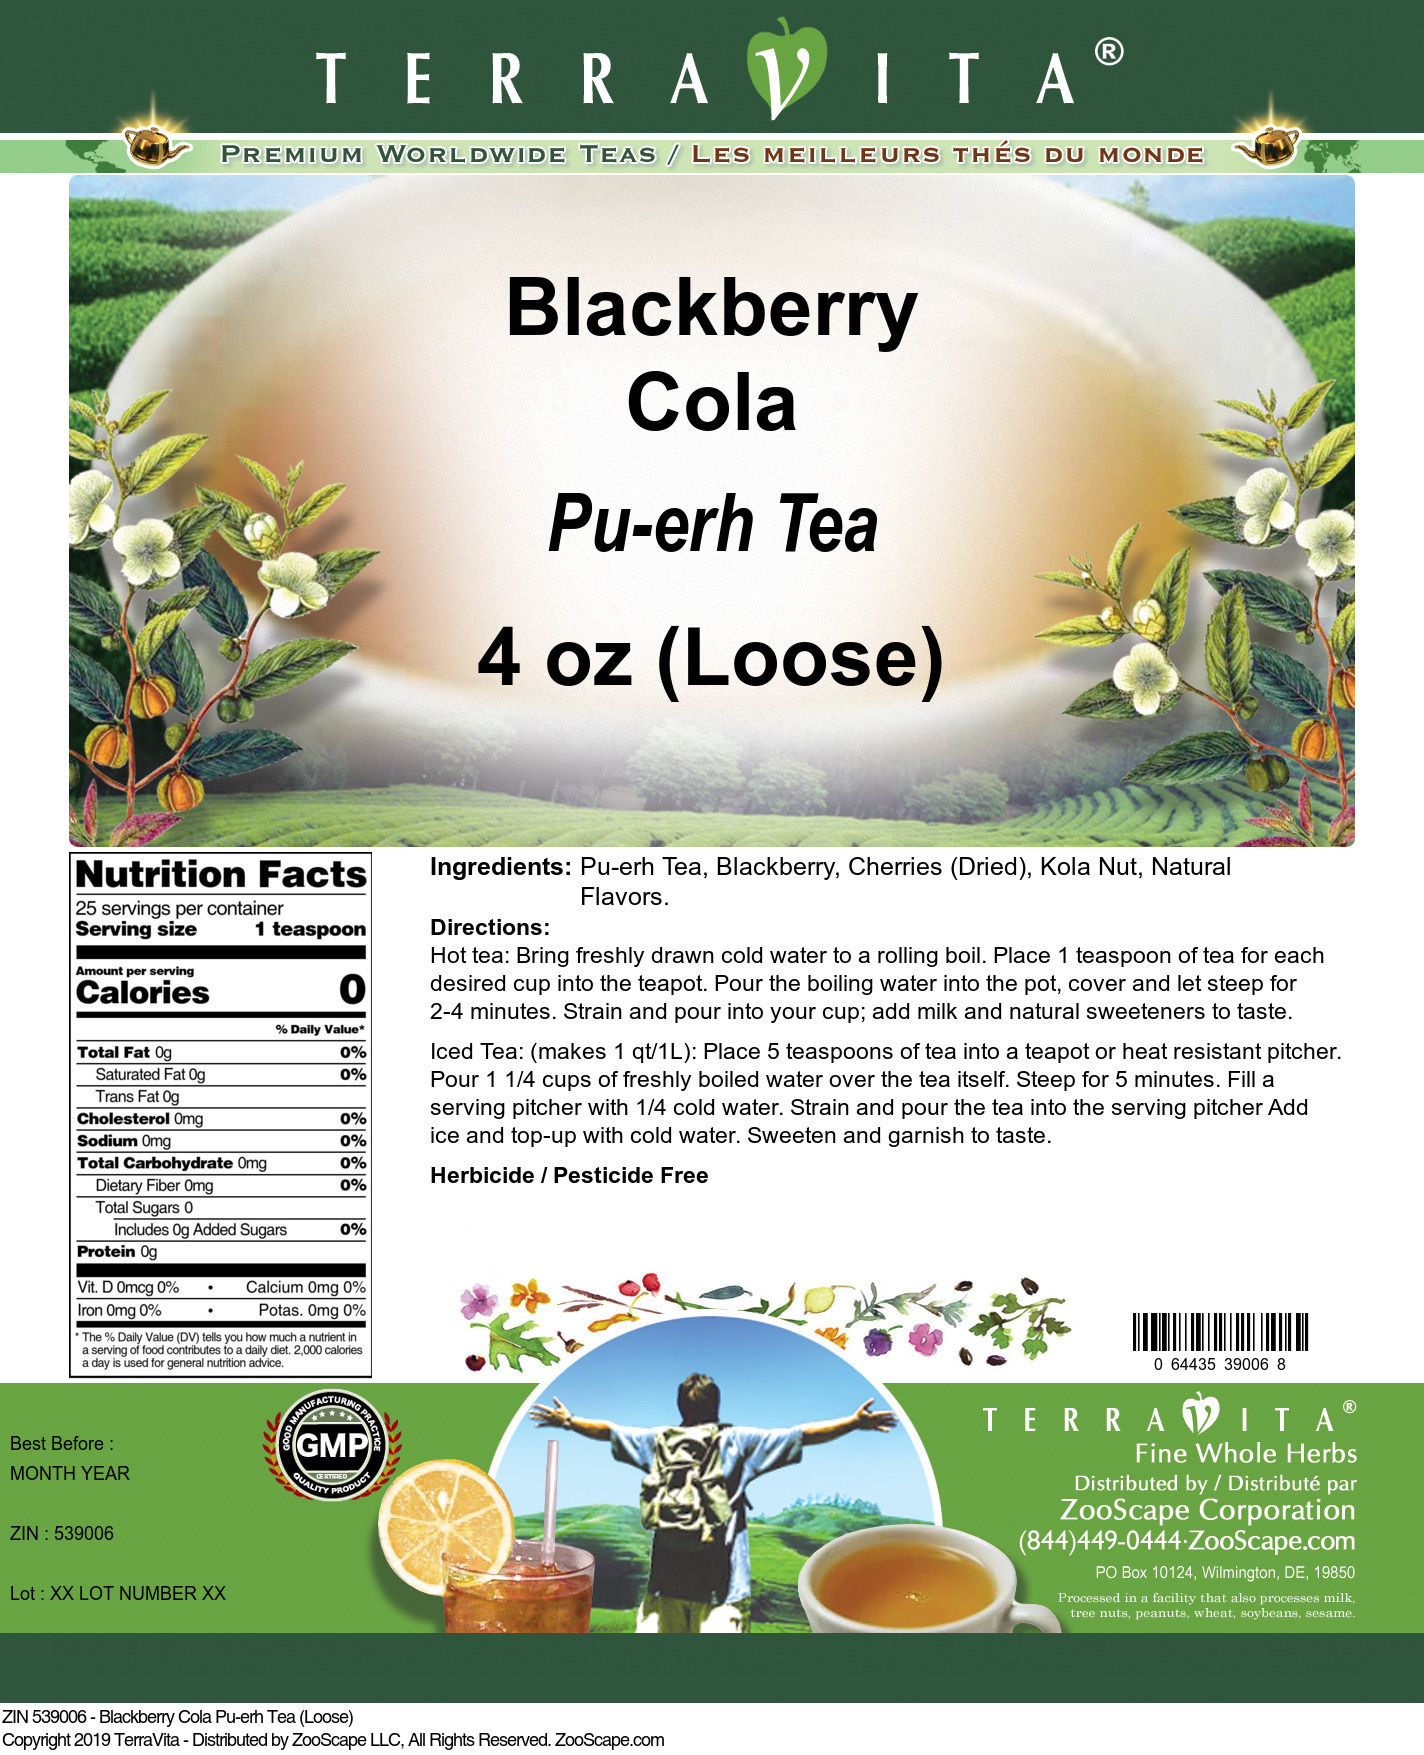 Blackberry Cola Pu-erh Tea (Loose) - Label